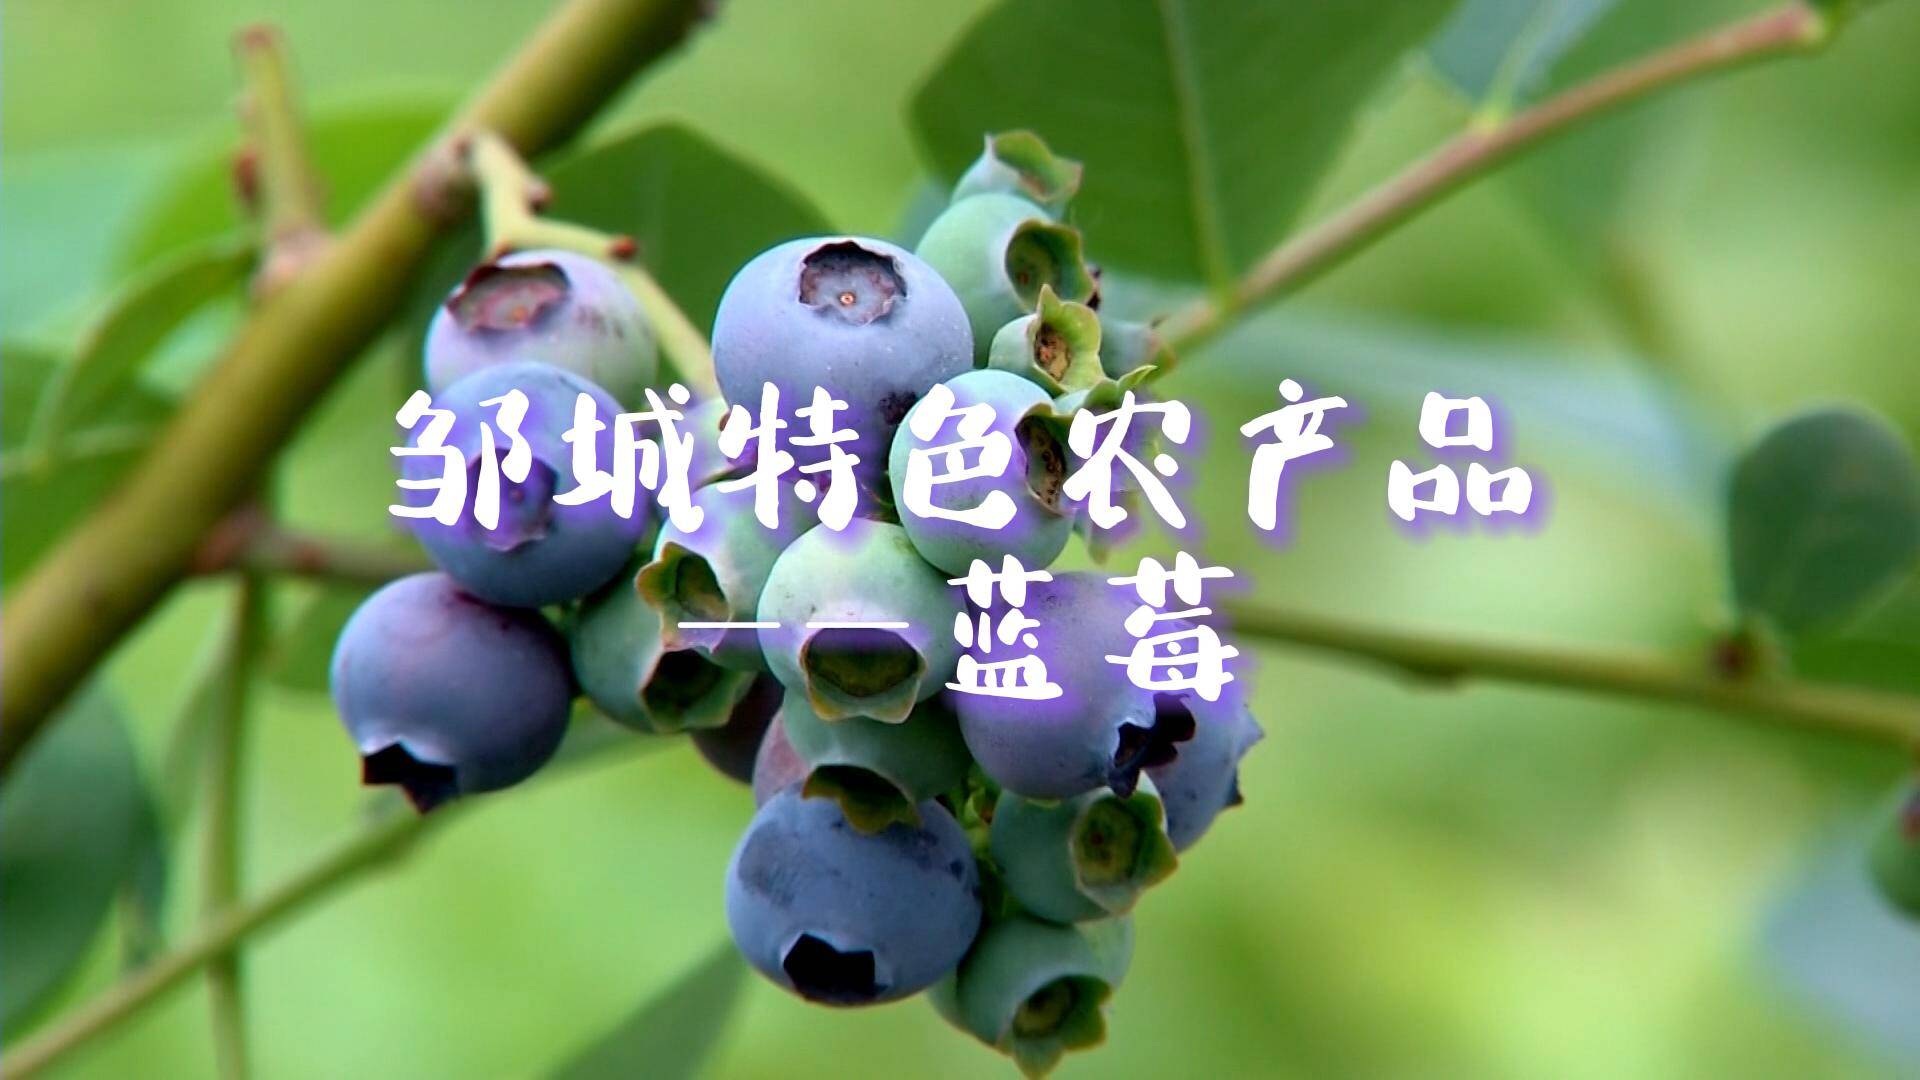 【邹视频·新闻】41秒|邹城特色农产品——蓝莓